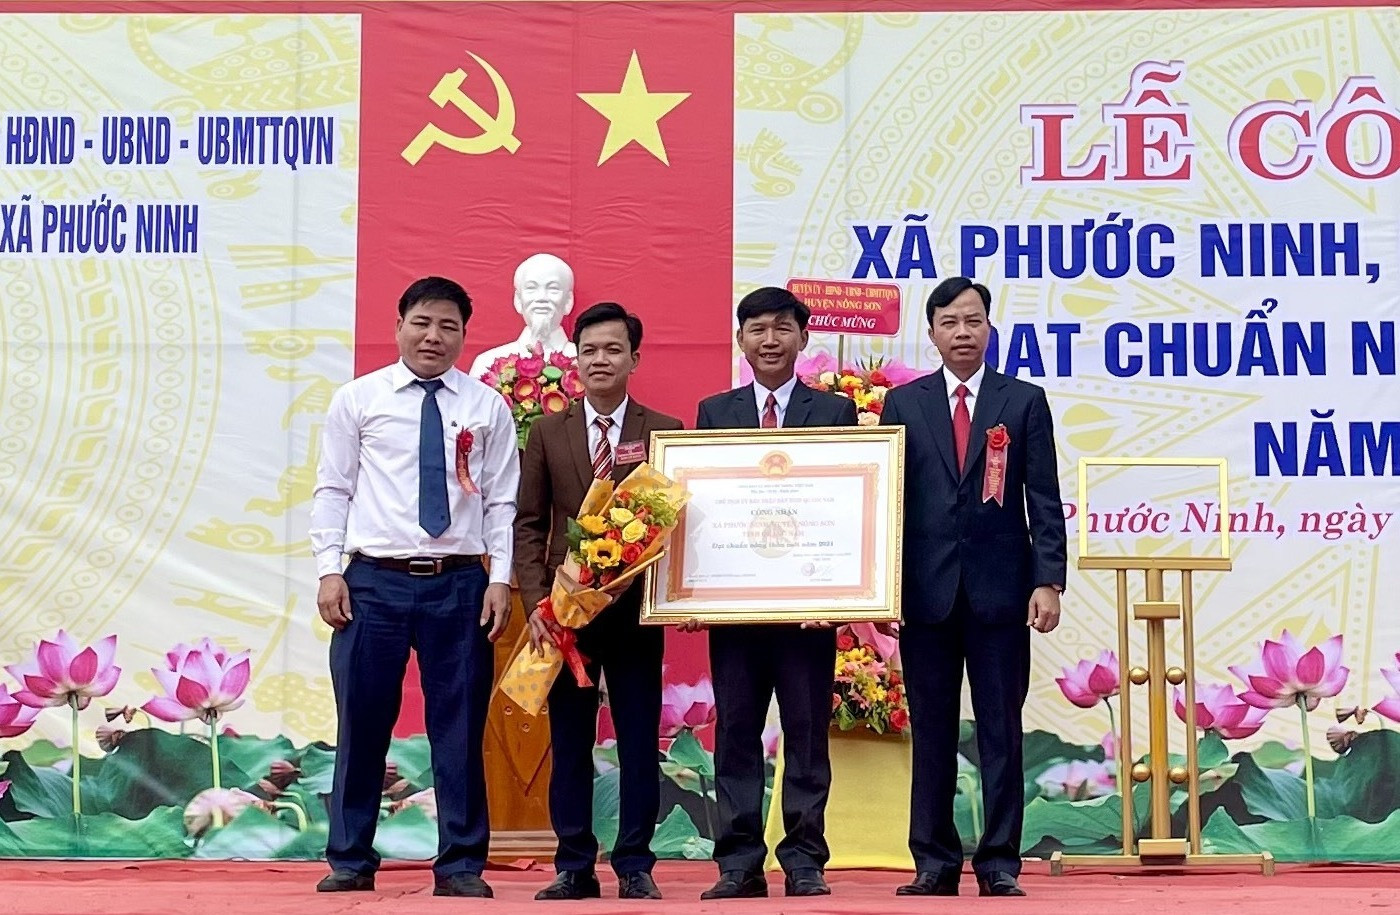 Lãnh đạo huyện Nông Sơn trao bằng công nhận xã đạt chuẩn nông thôn mới năm 2021 cho lãnh đạo xã Phước Ninh. Ảnh: TÂM LÊ